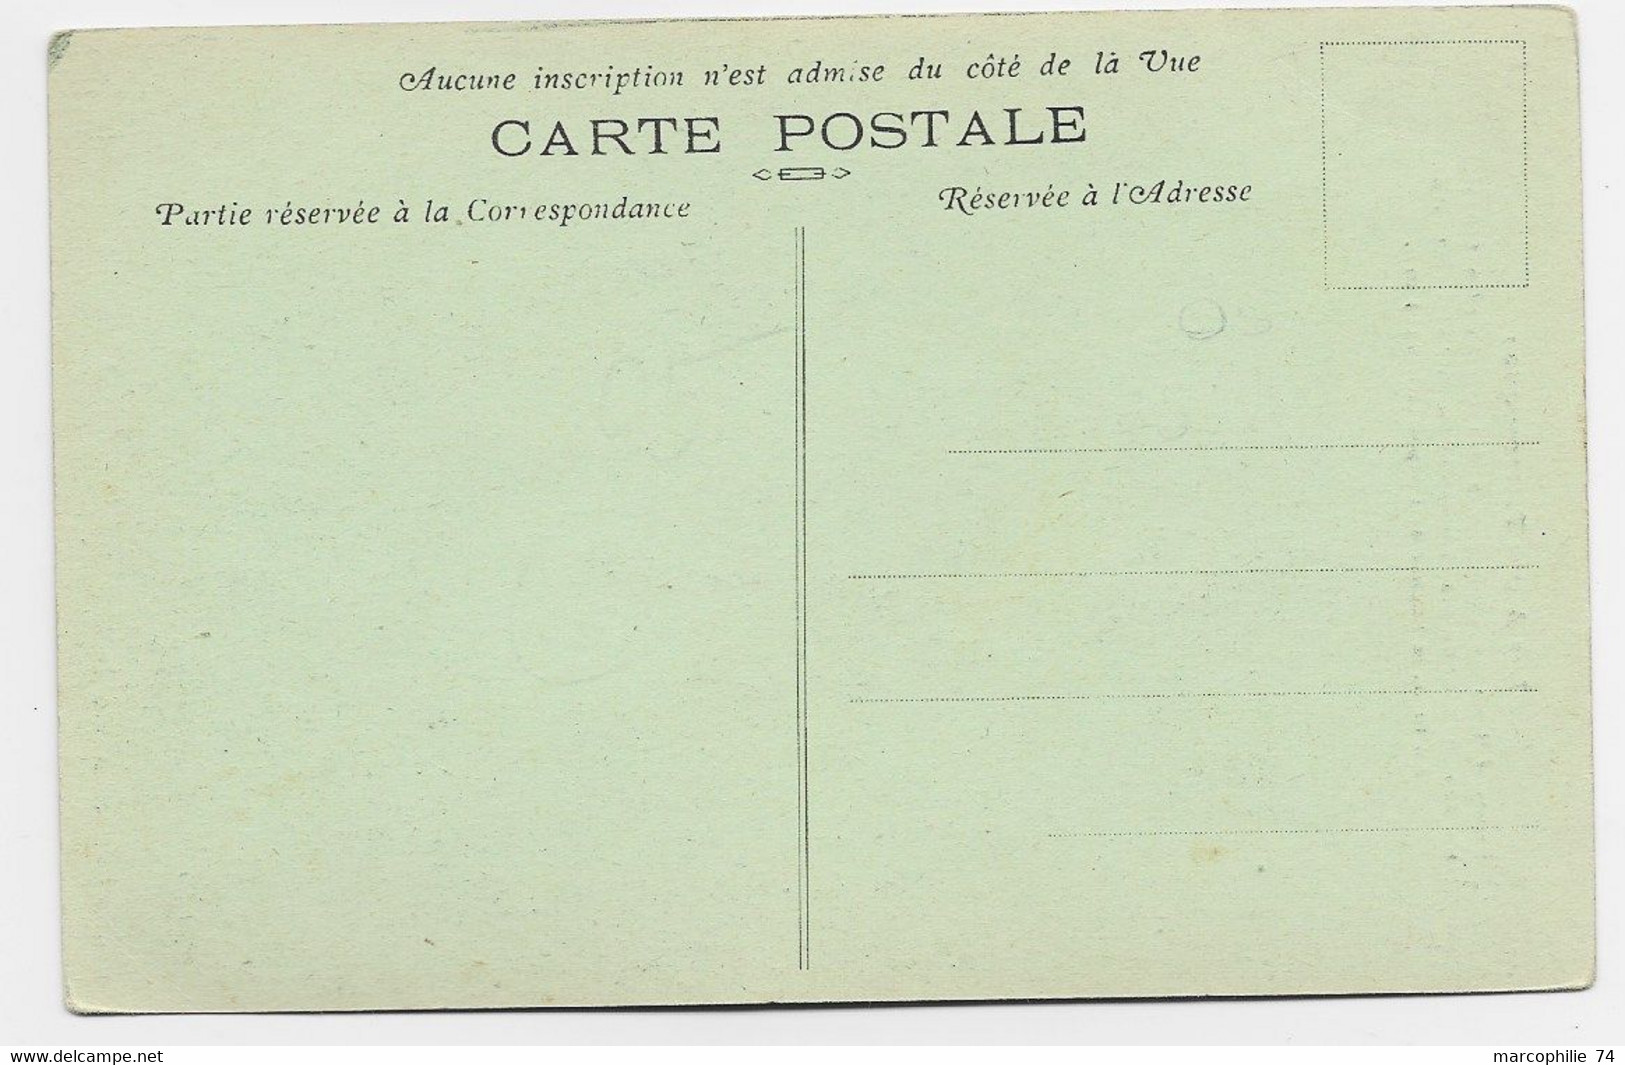 FRANCE CARTE CARD MONTGENEVRE ALPES SPORTS D'HIVER ELIMINATOIRE DES OLYMPIADES 1924 TREMPLIN - Winter 1924: Chamonix